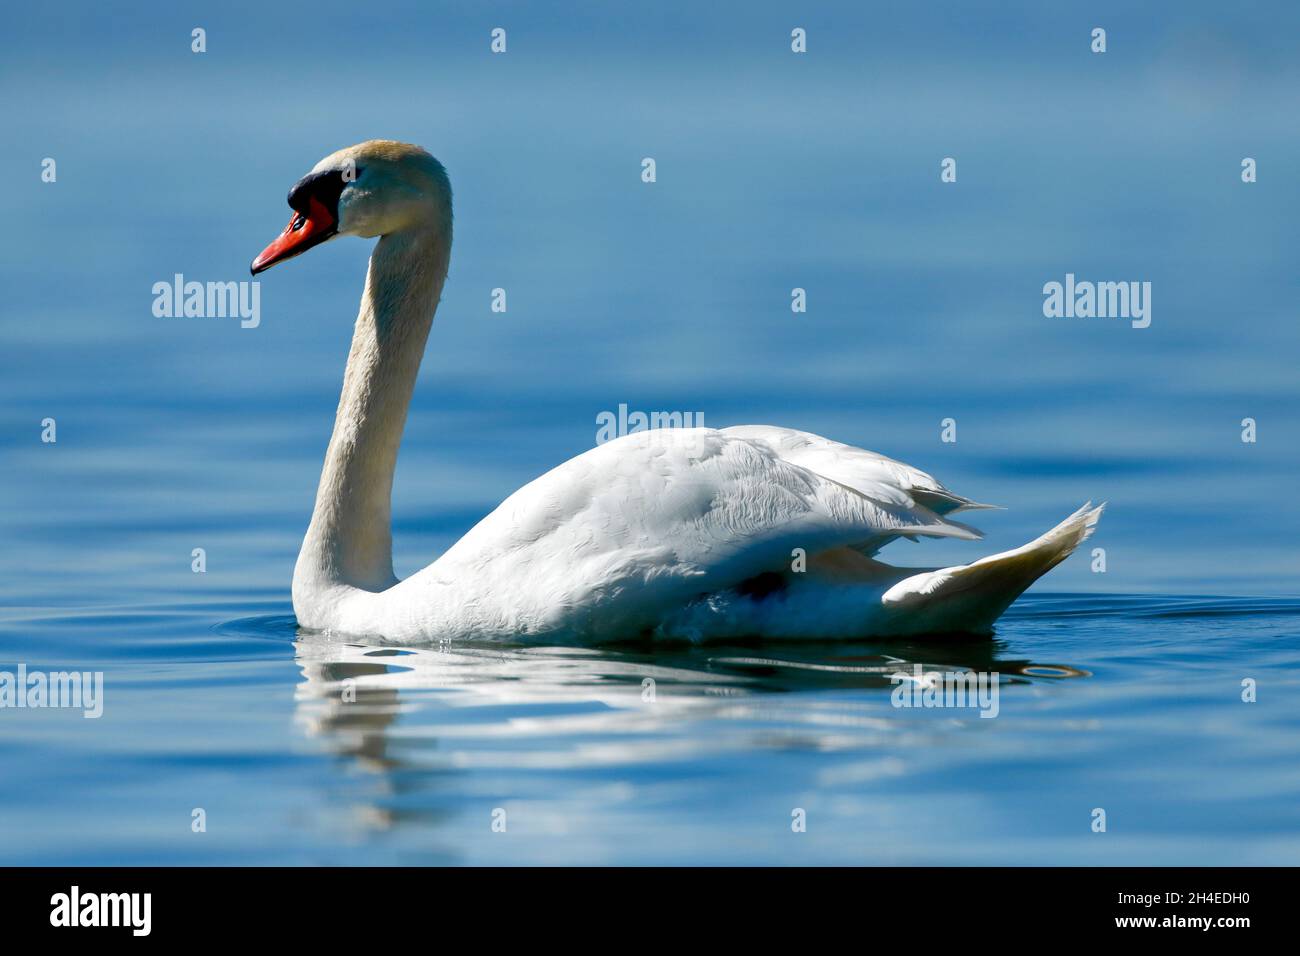 Höckerschwan, Cygnus olor, Mute Swan, schwimmt im blauen Seewasser Zentraleuropa Stock Photo